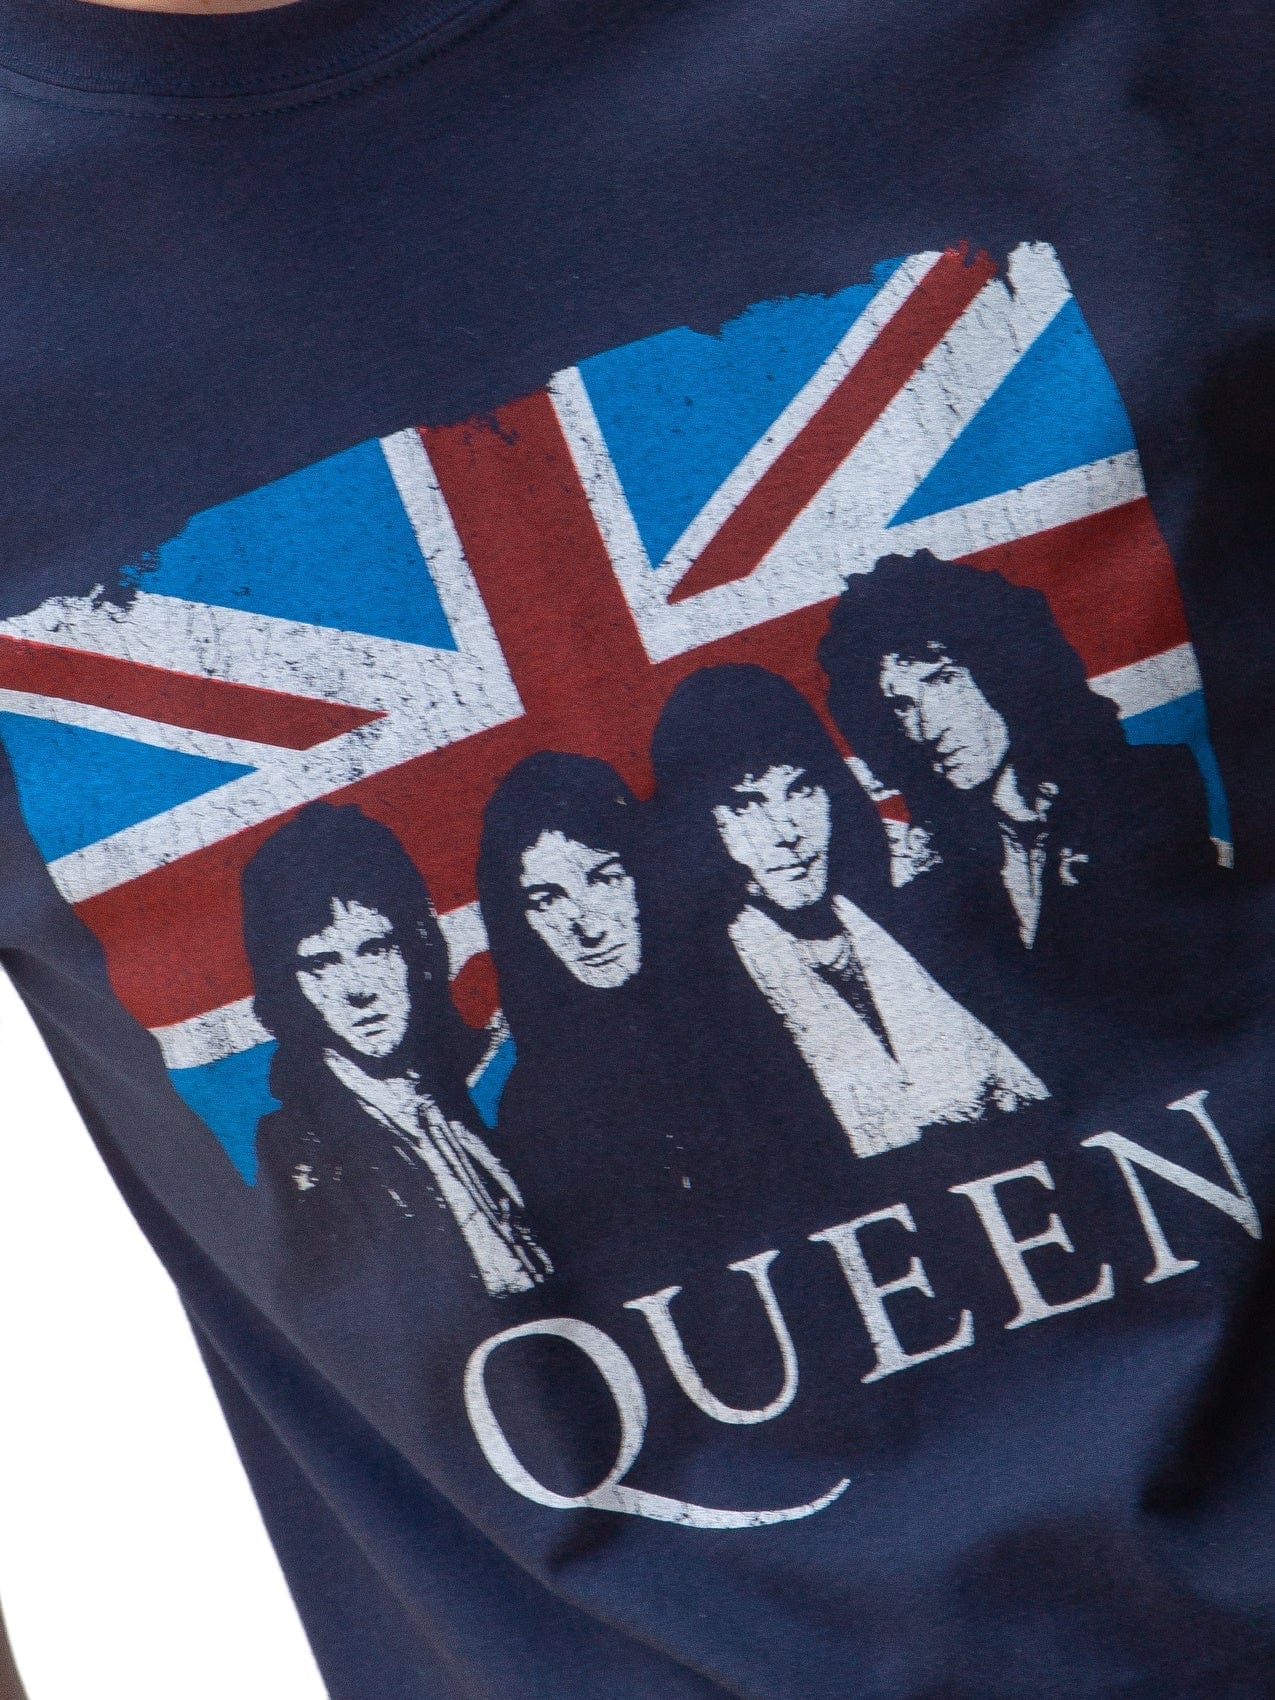 RockstarzT-shirt Queen "Union Jack" Blue